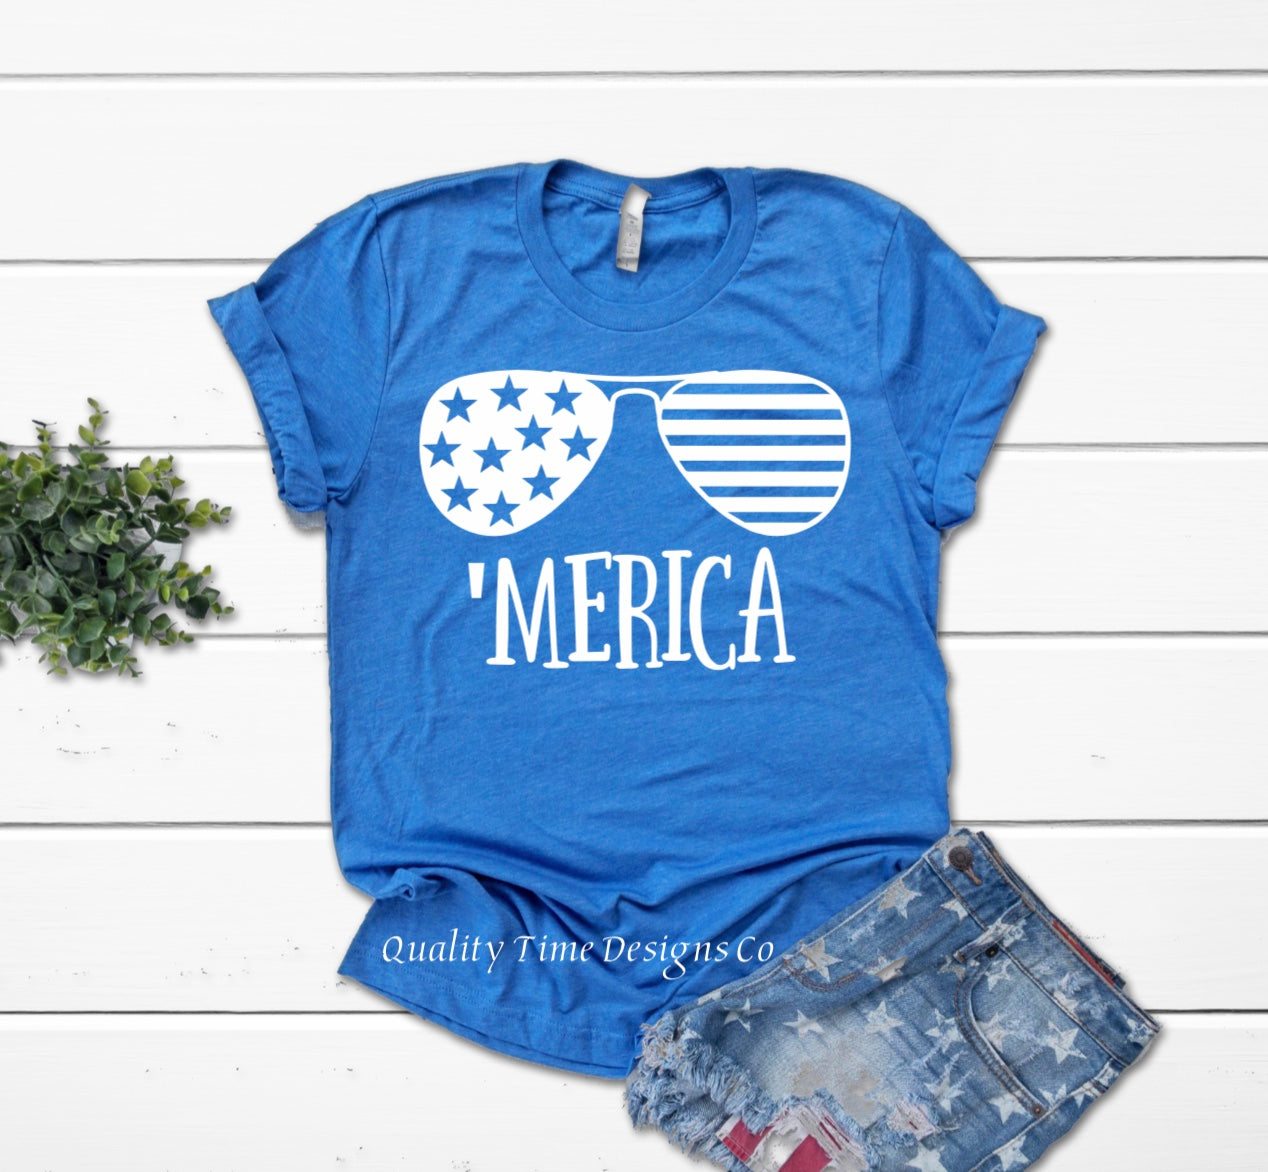 Merica sunglasses graphic t-shirt 